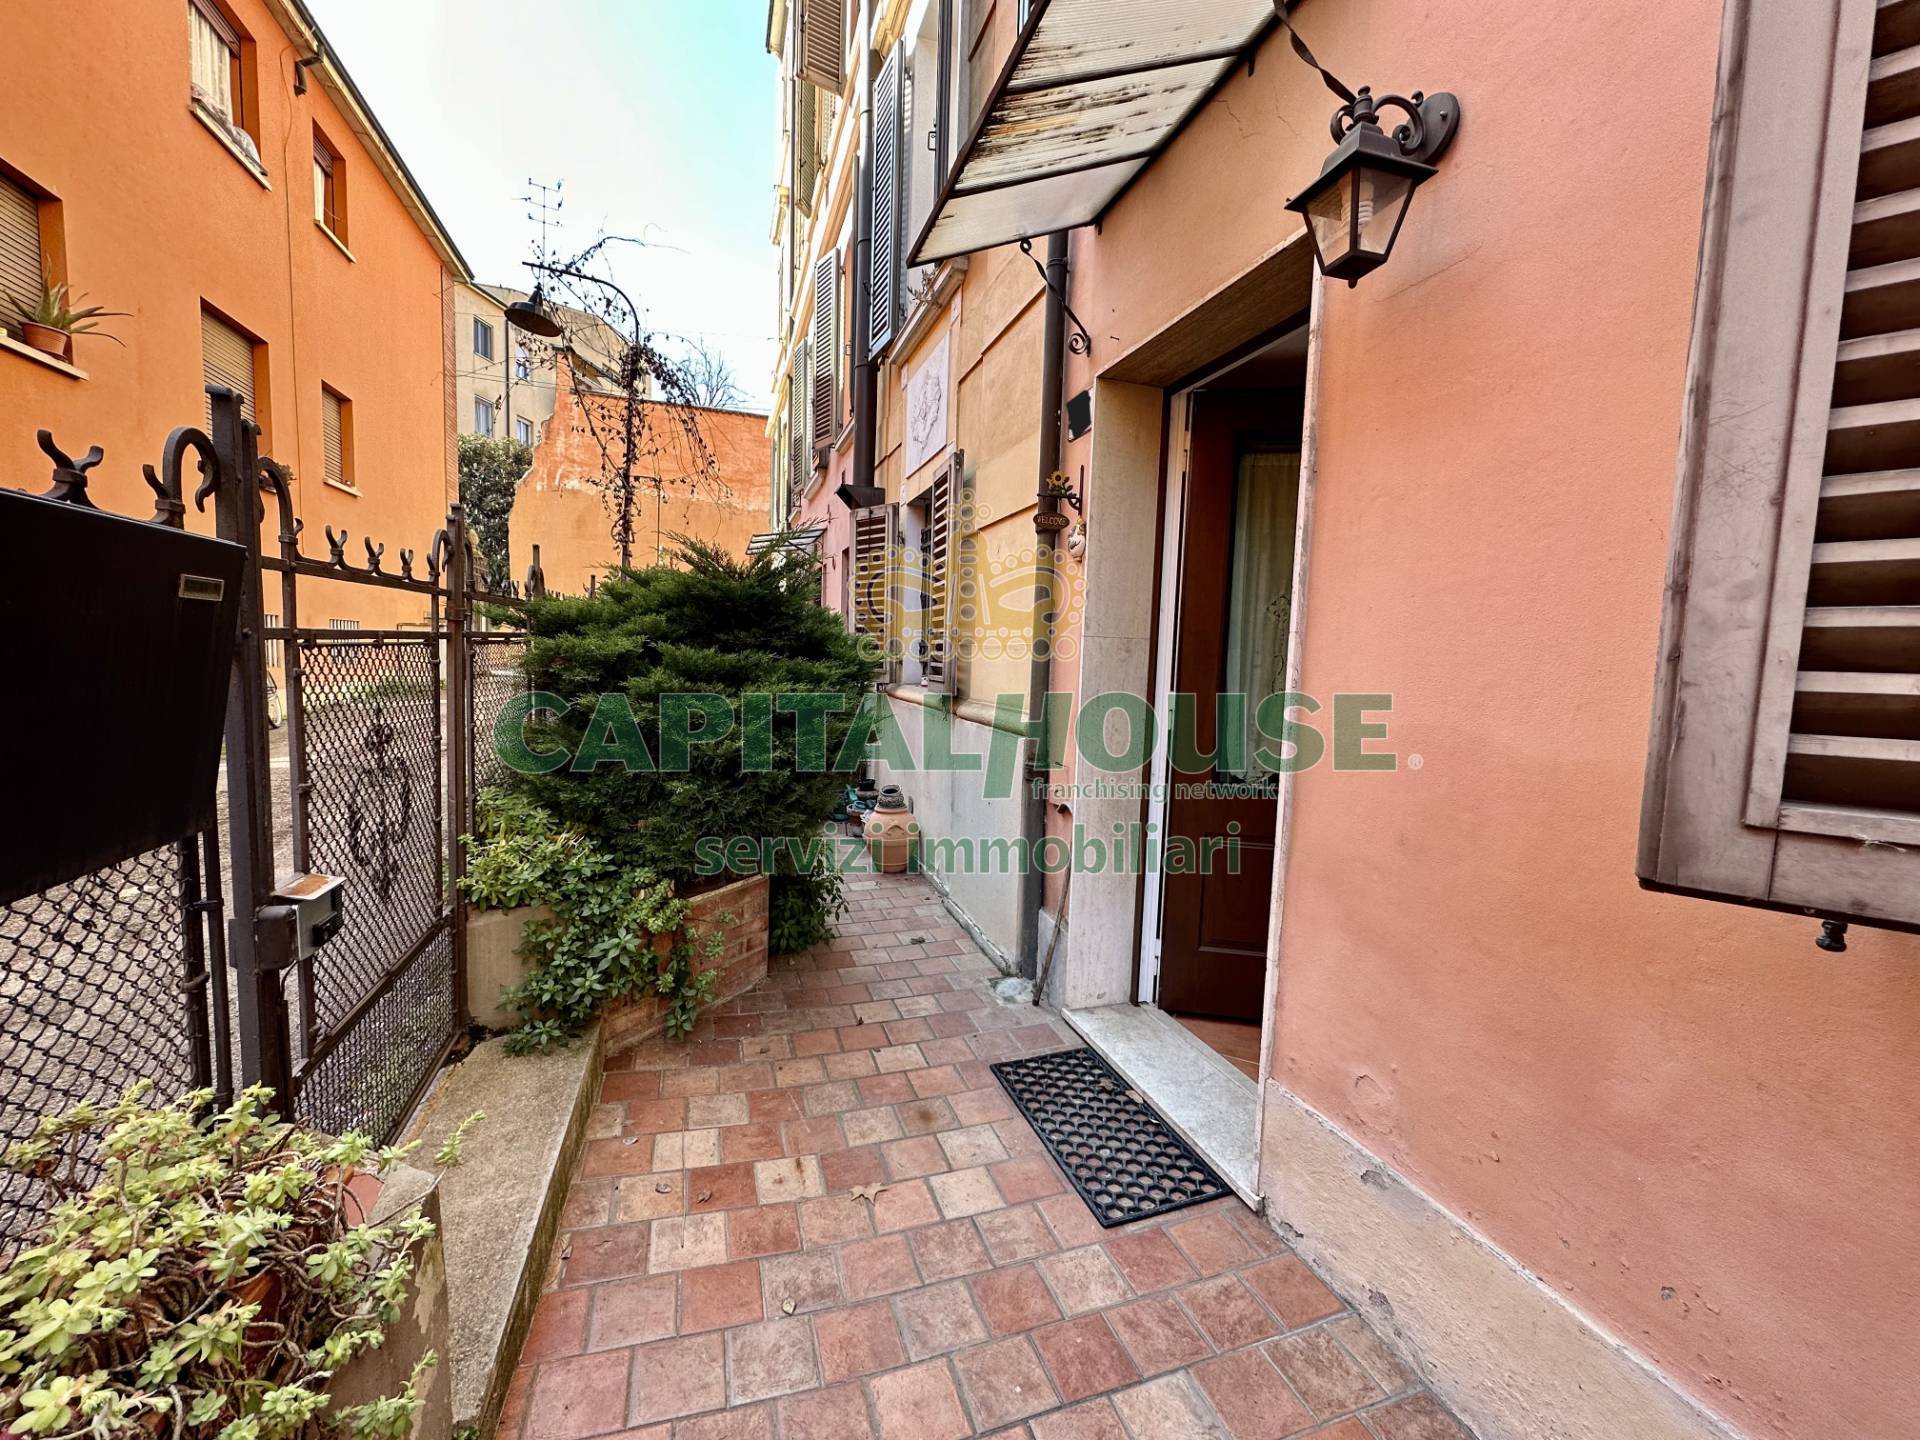 Appartamento in vendita a Bologna, 3 locali, zona Località: Centrostorico, prezzo € 330.000 | PortaleAgenzieImmobiliari.it